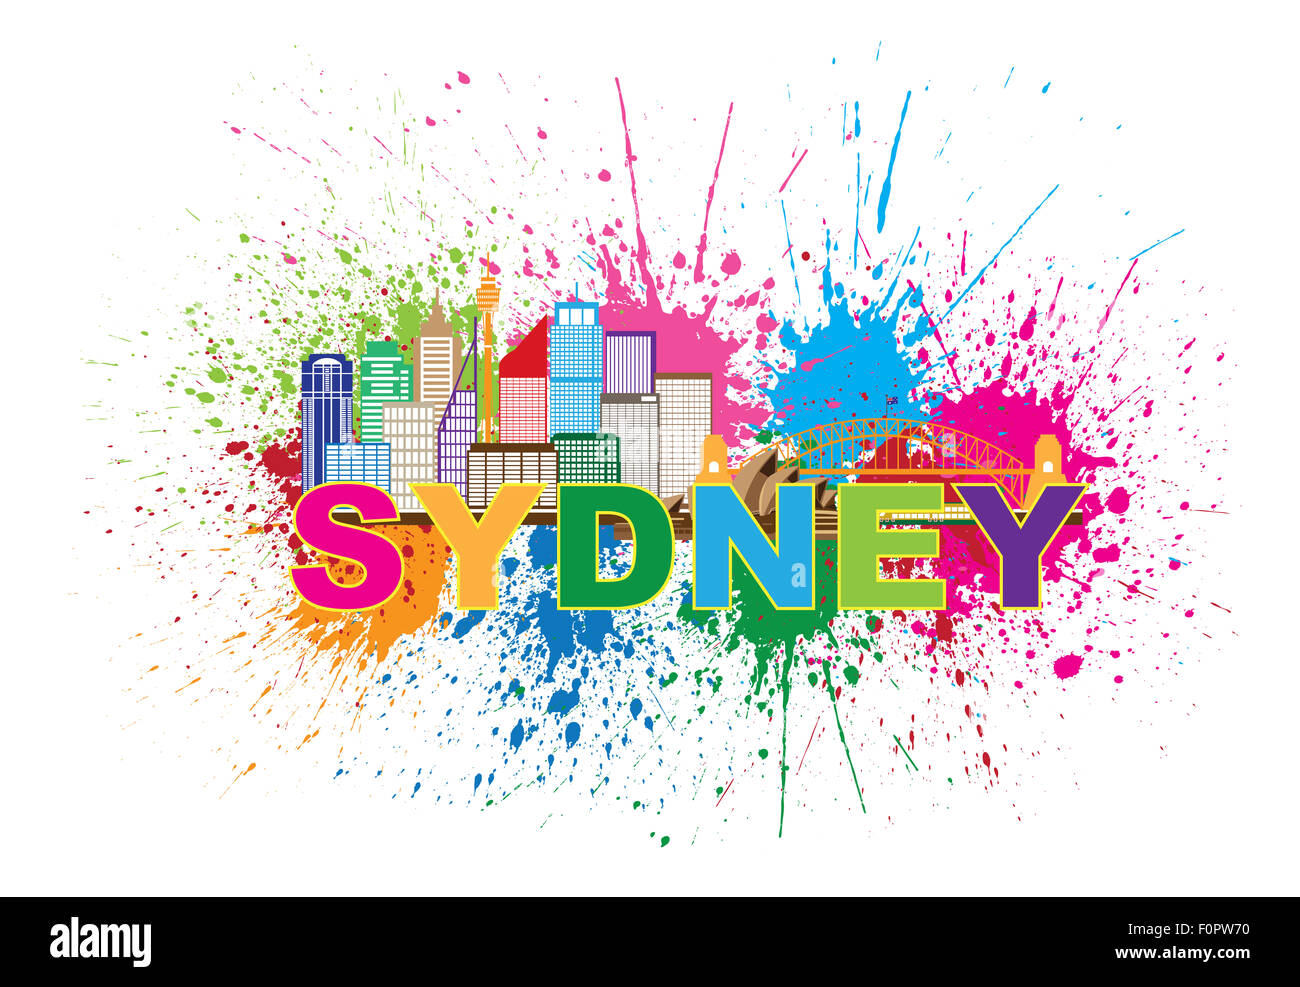 Australie Sydney Harbour Bridge Repères Skyline Splatter peinture abstraite colorées isolé sur fond blanc Illustration Banque D'Images